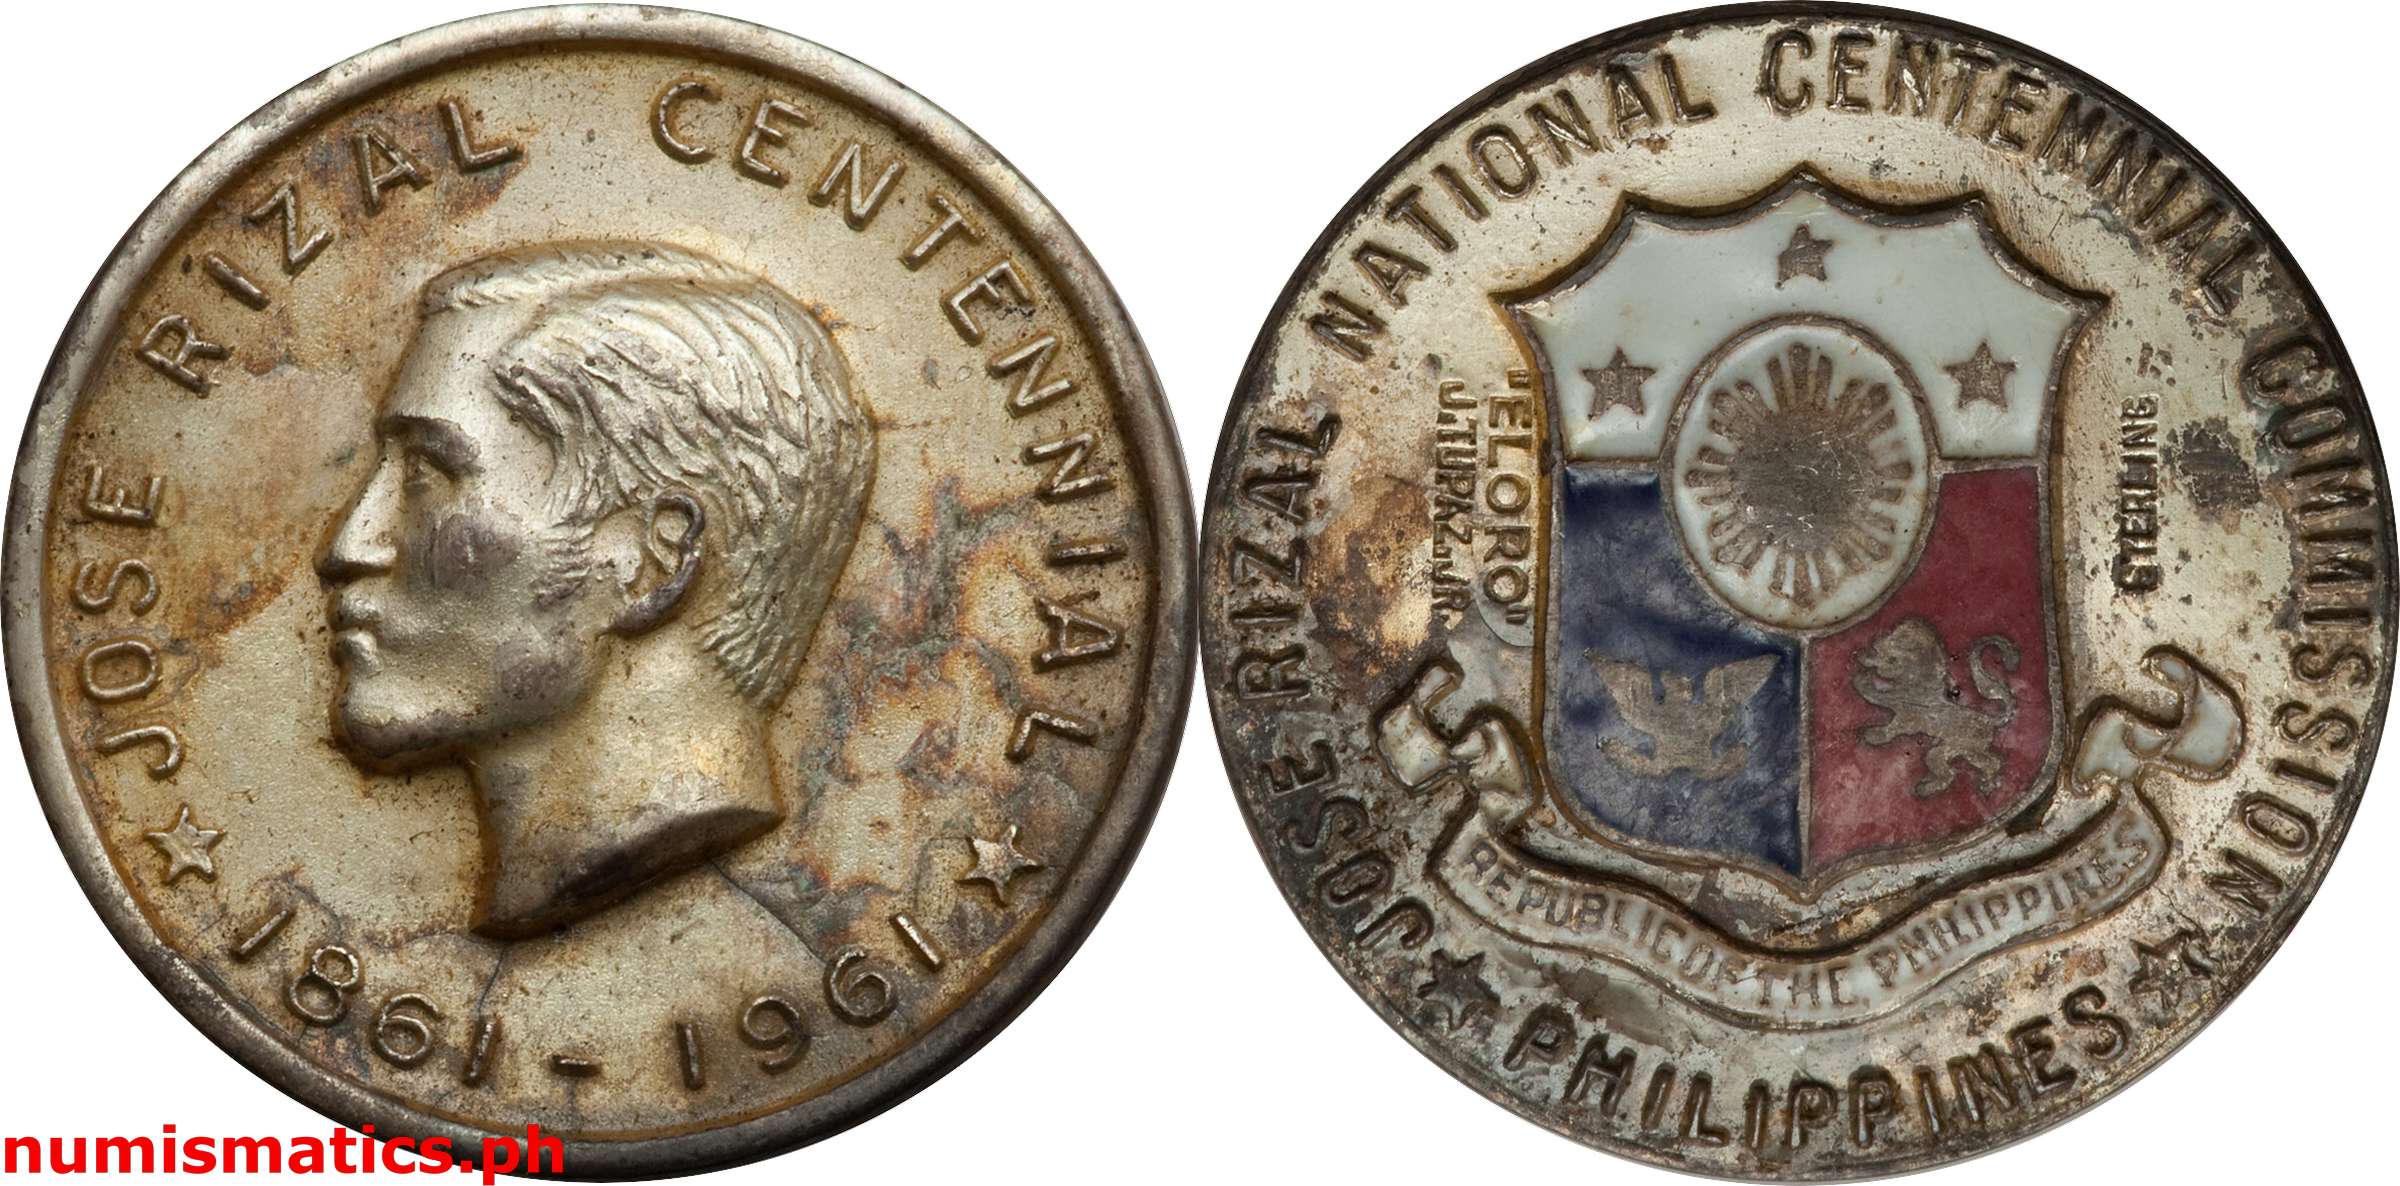 1961 Jose Rizal Centennial Silver